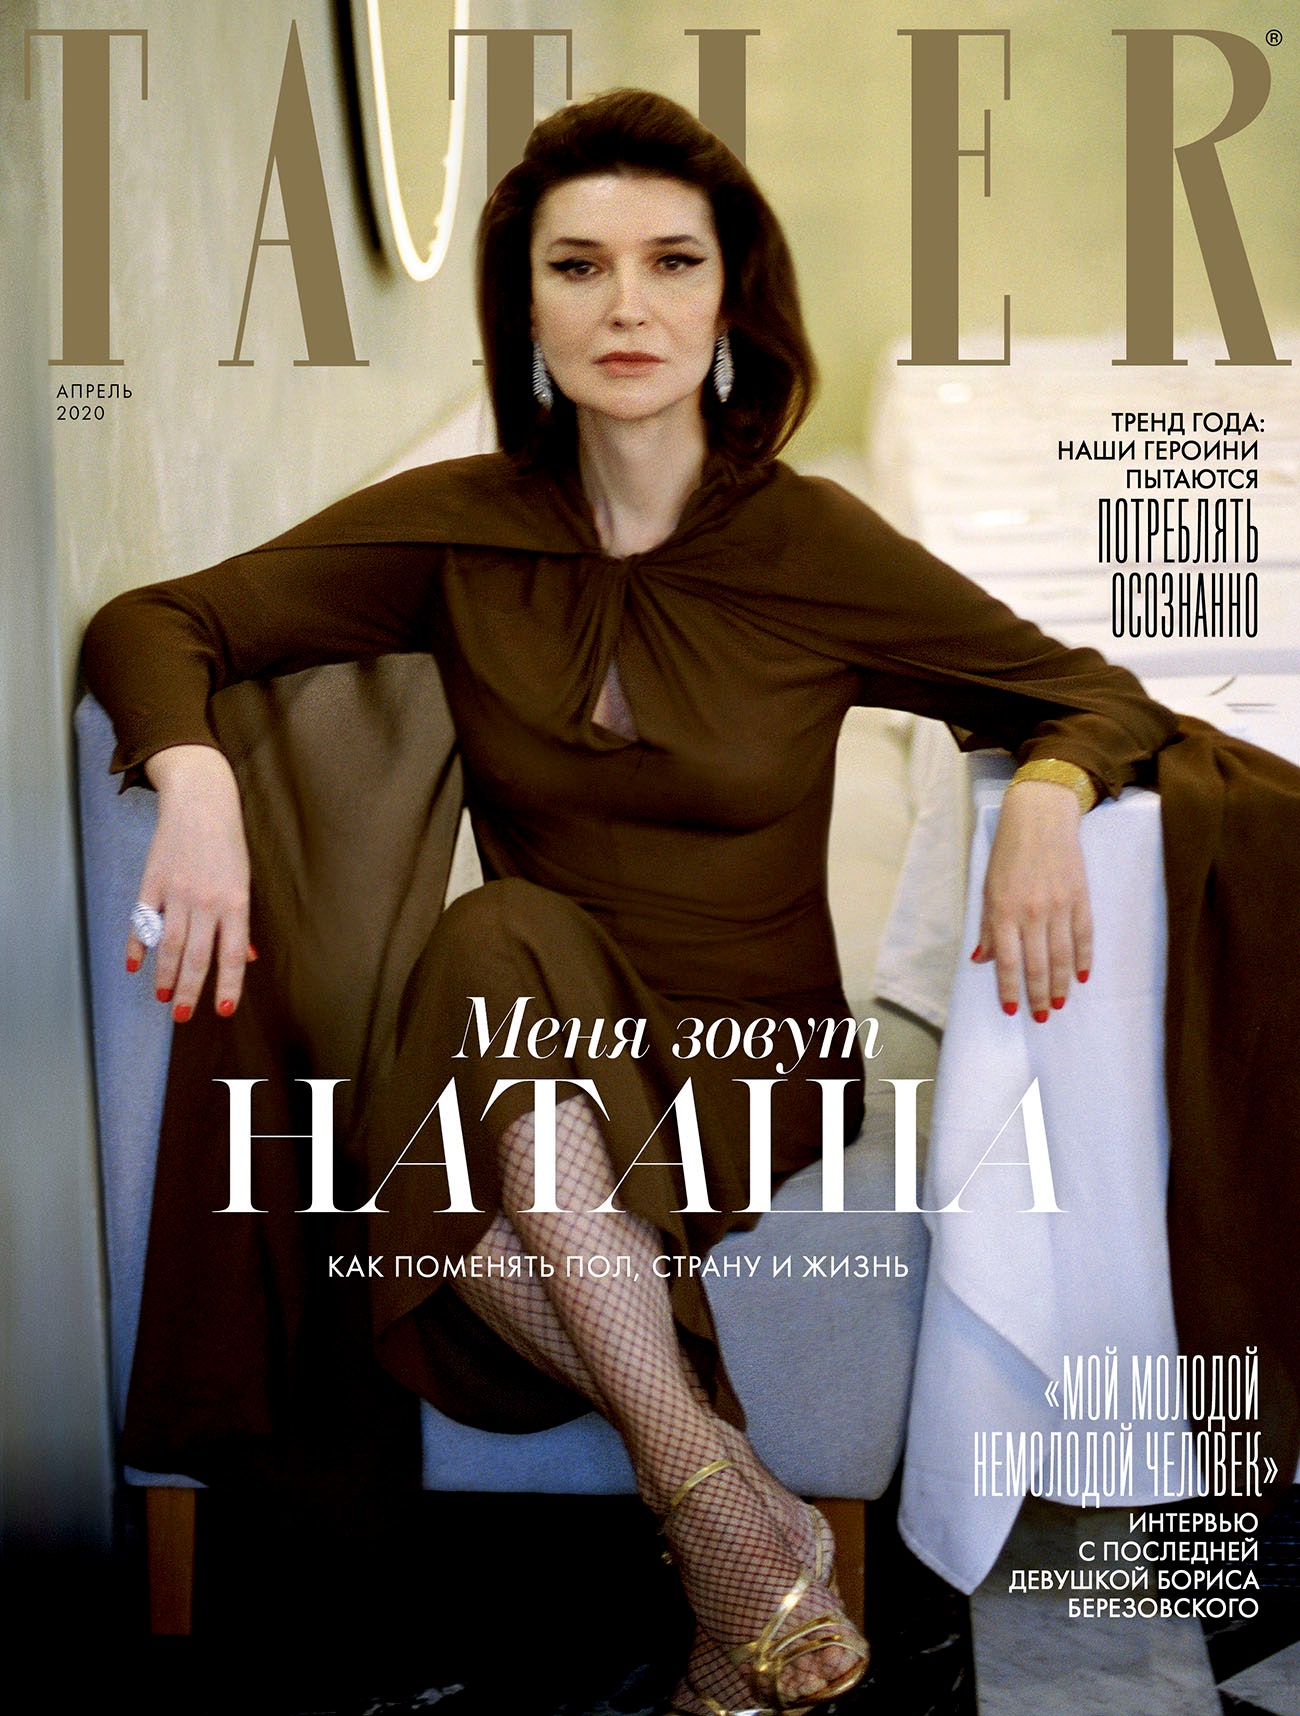 Наташа Максимова на обложке апрельского номера Tatler. В продаже с 11 марта.